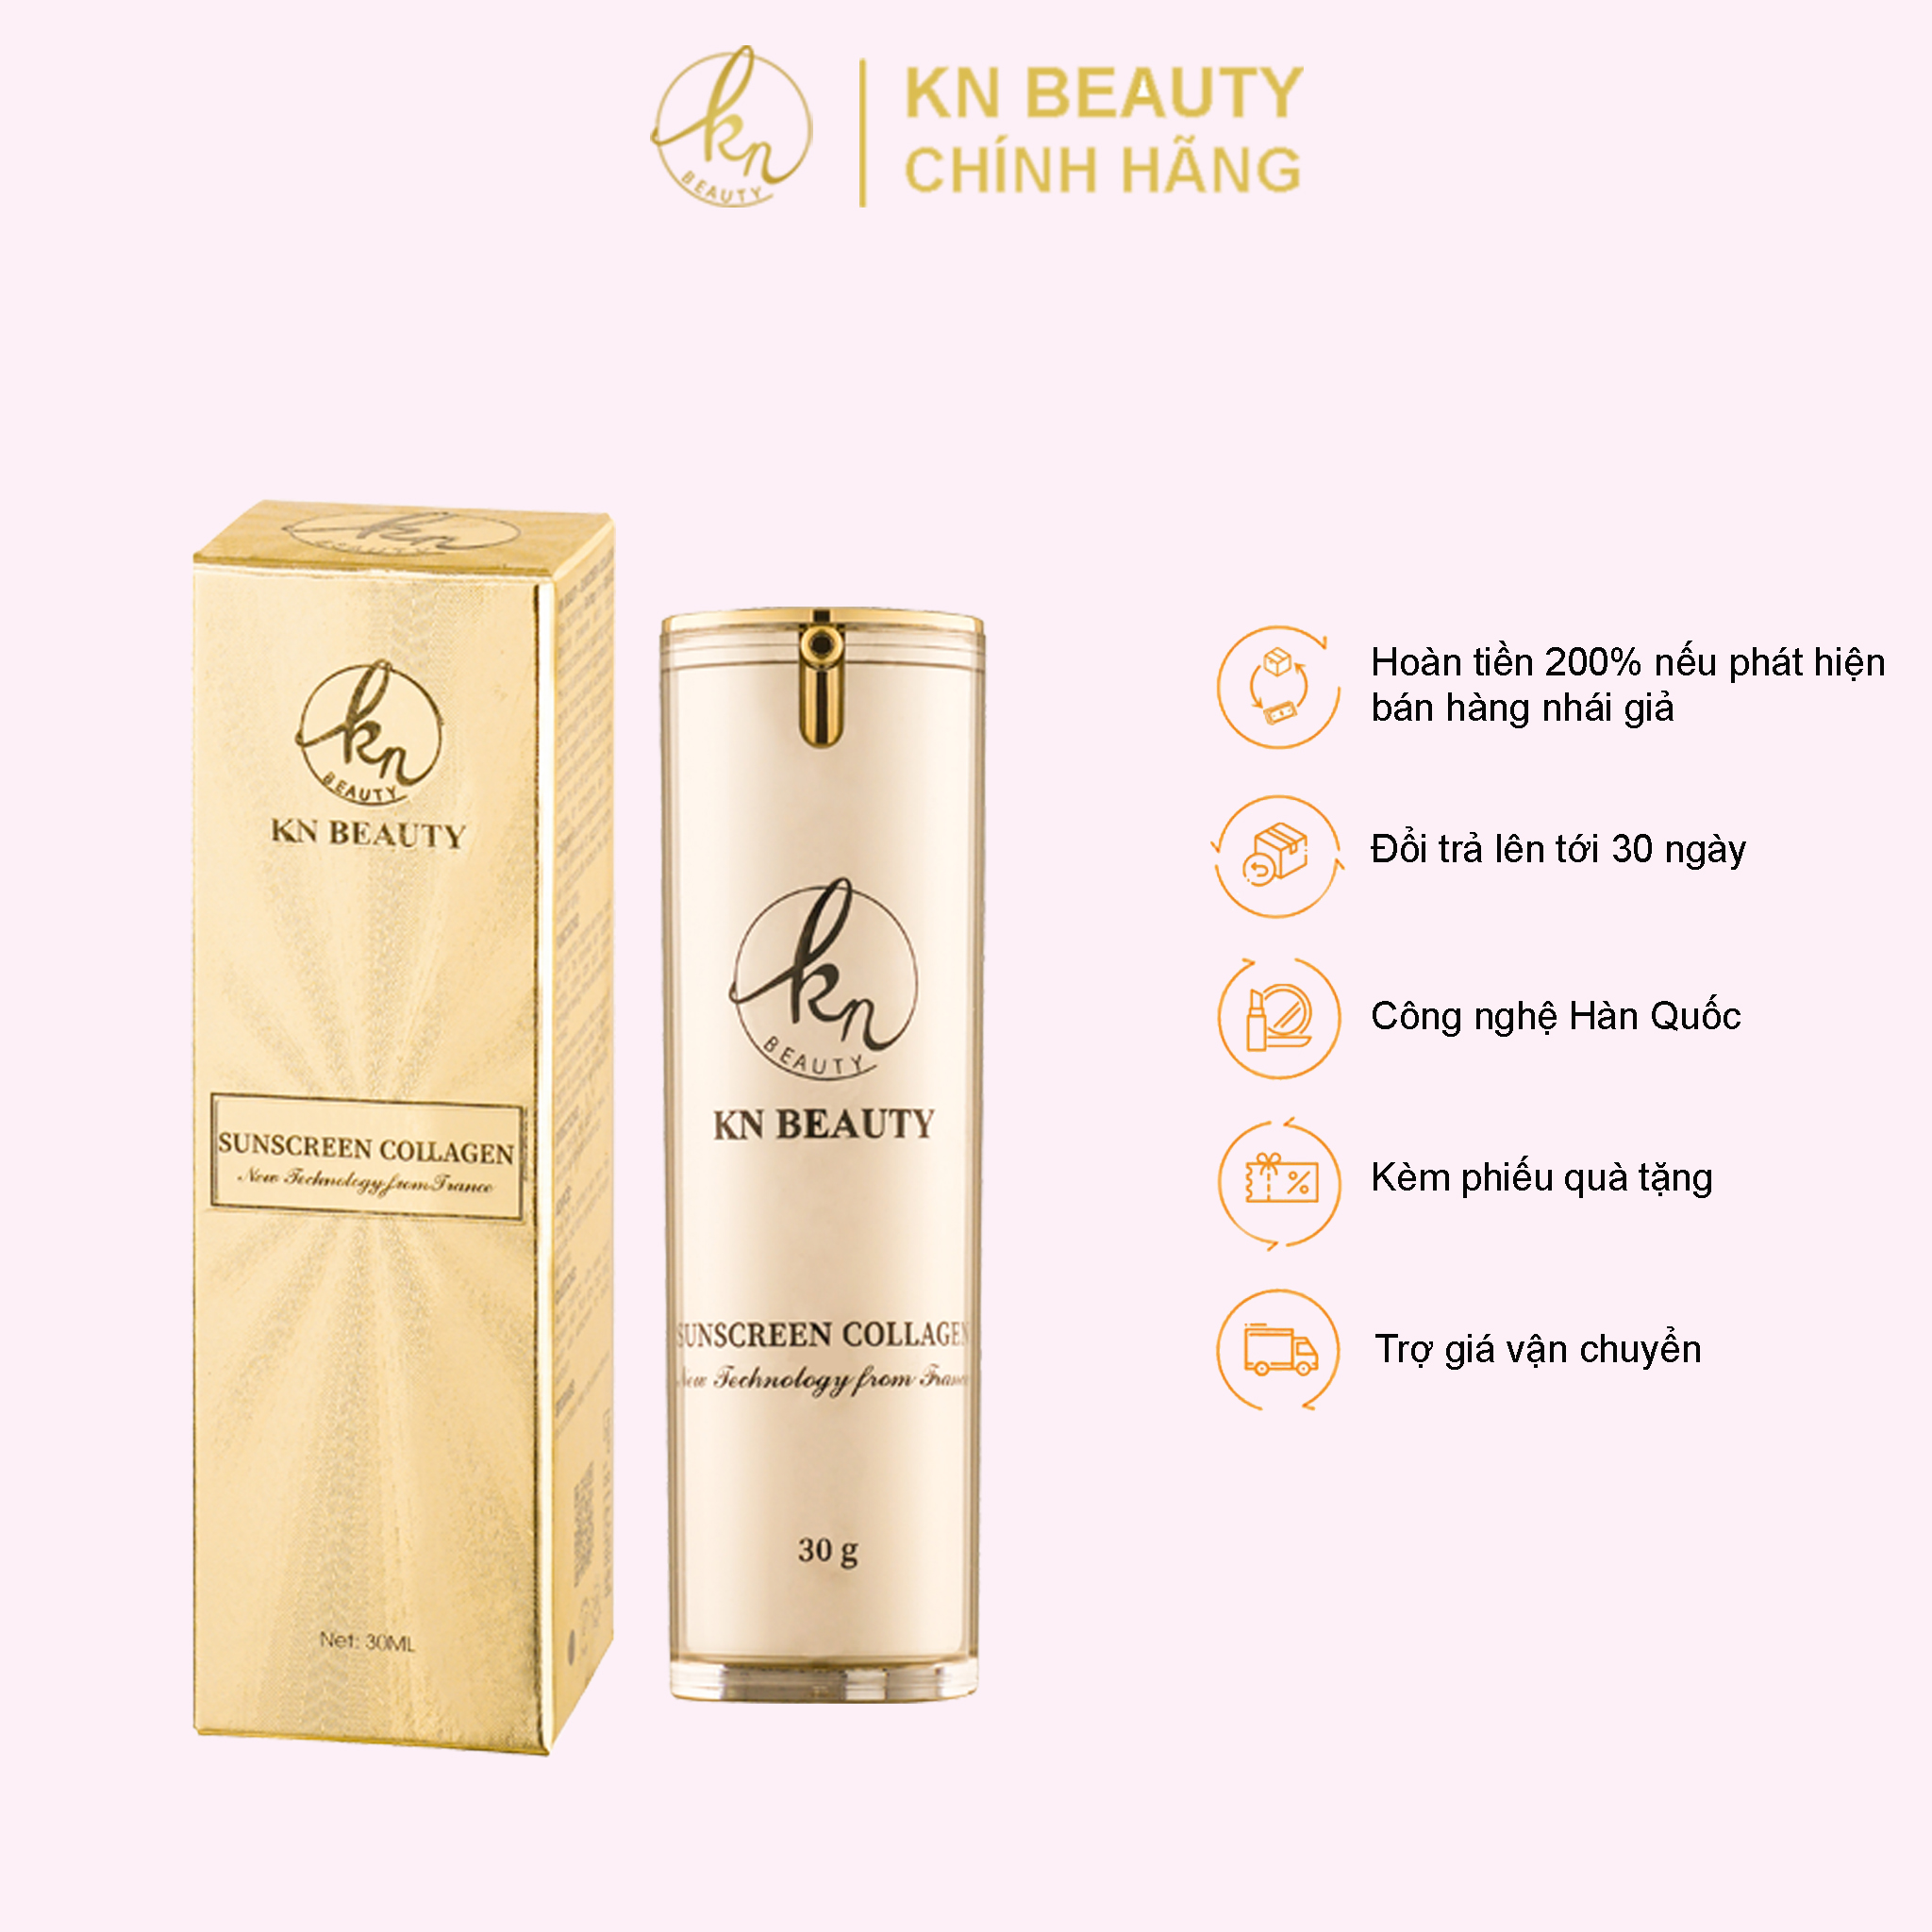 KN Beauty - Kem chống nắng Sunscreen Collagen 30g